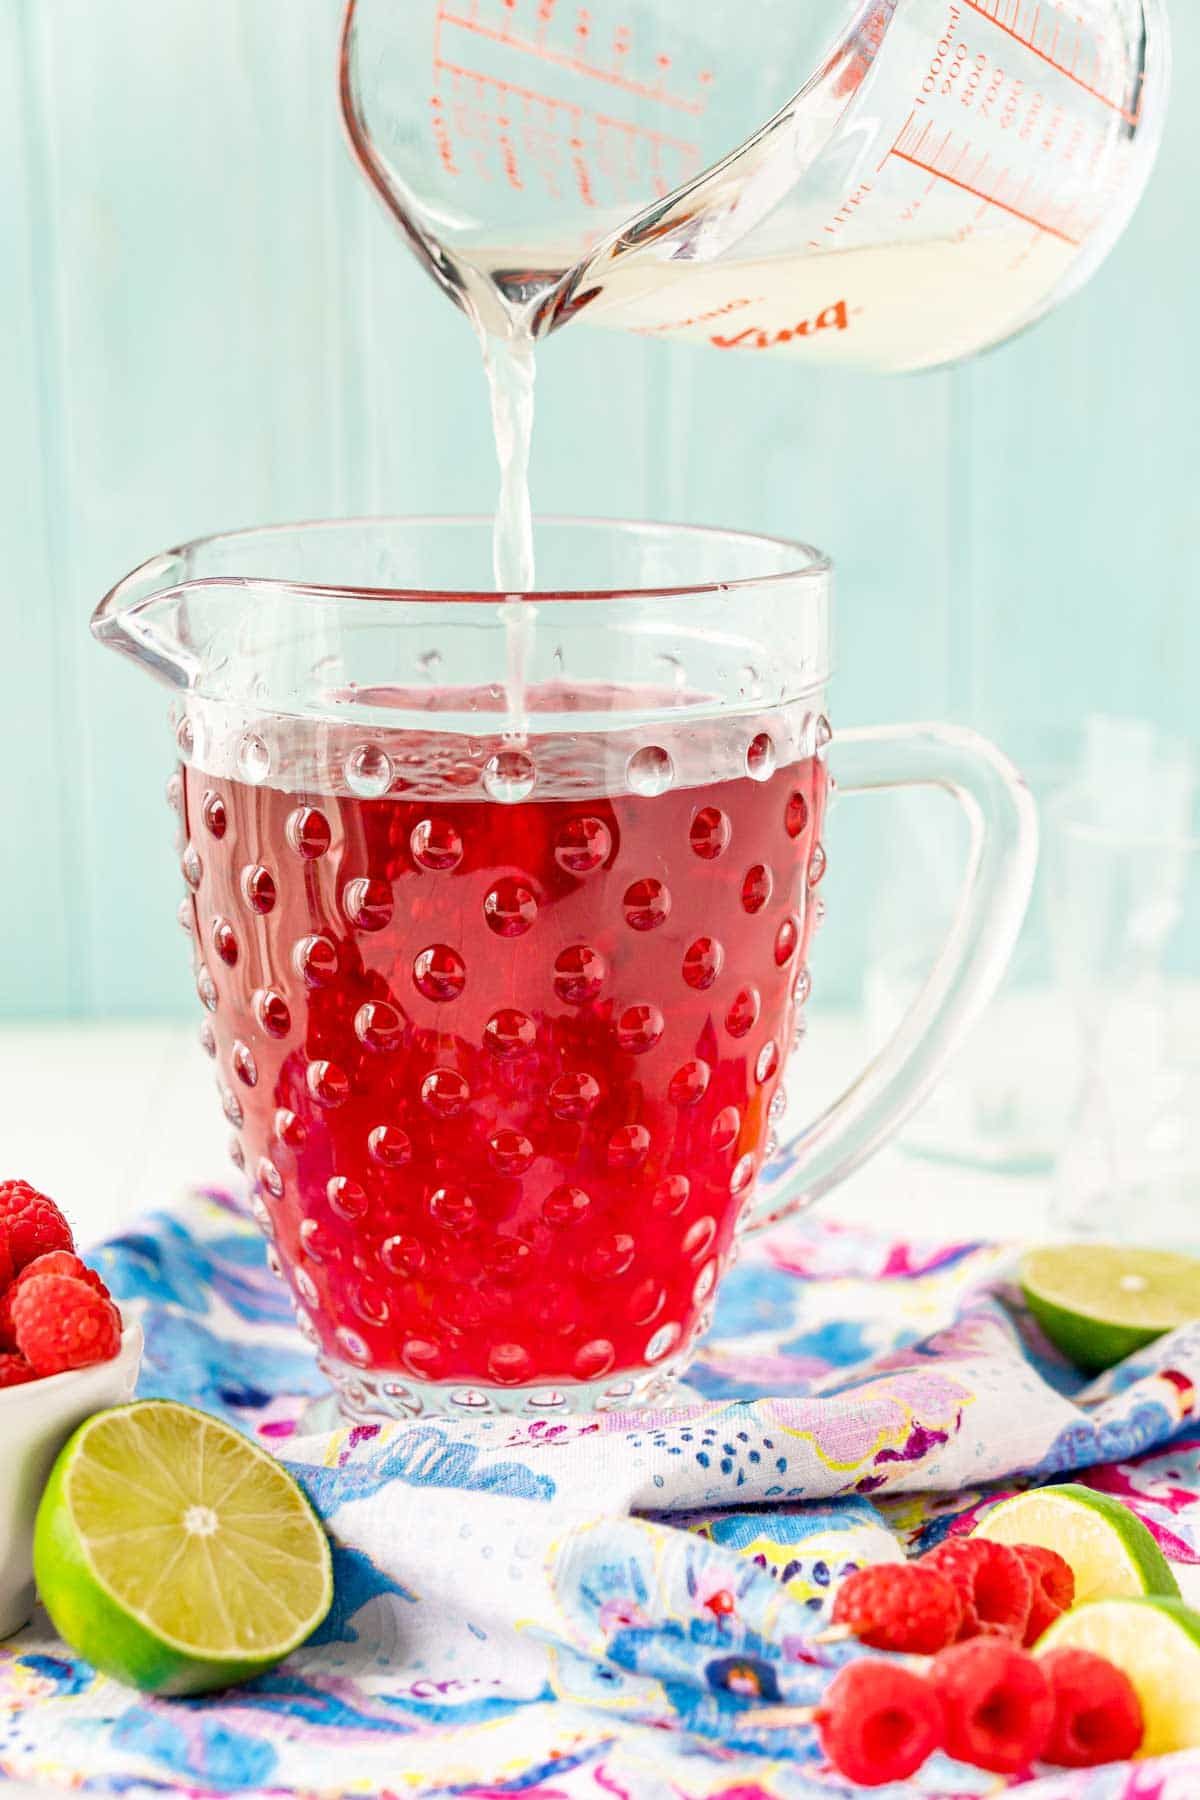 Una taza medidora vertiendo líquido transparente en una jarra de ponche de frambuesa roja